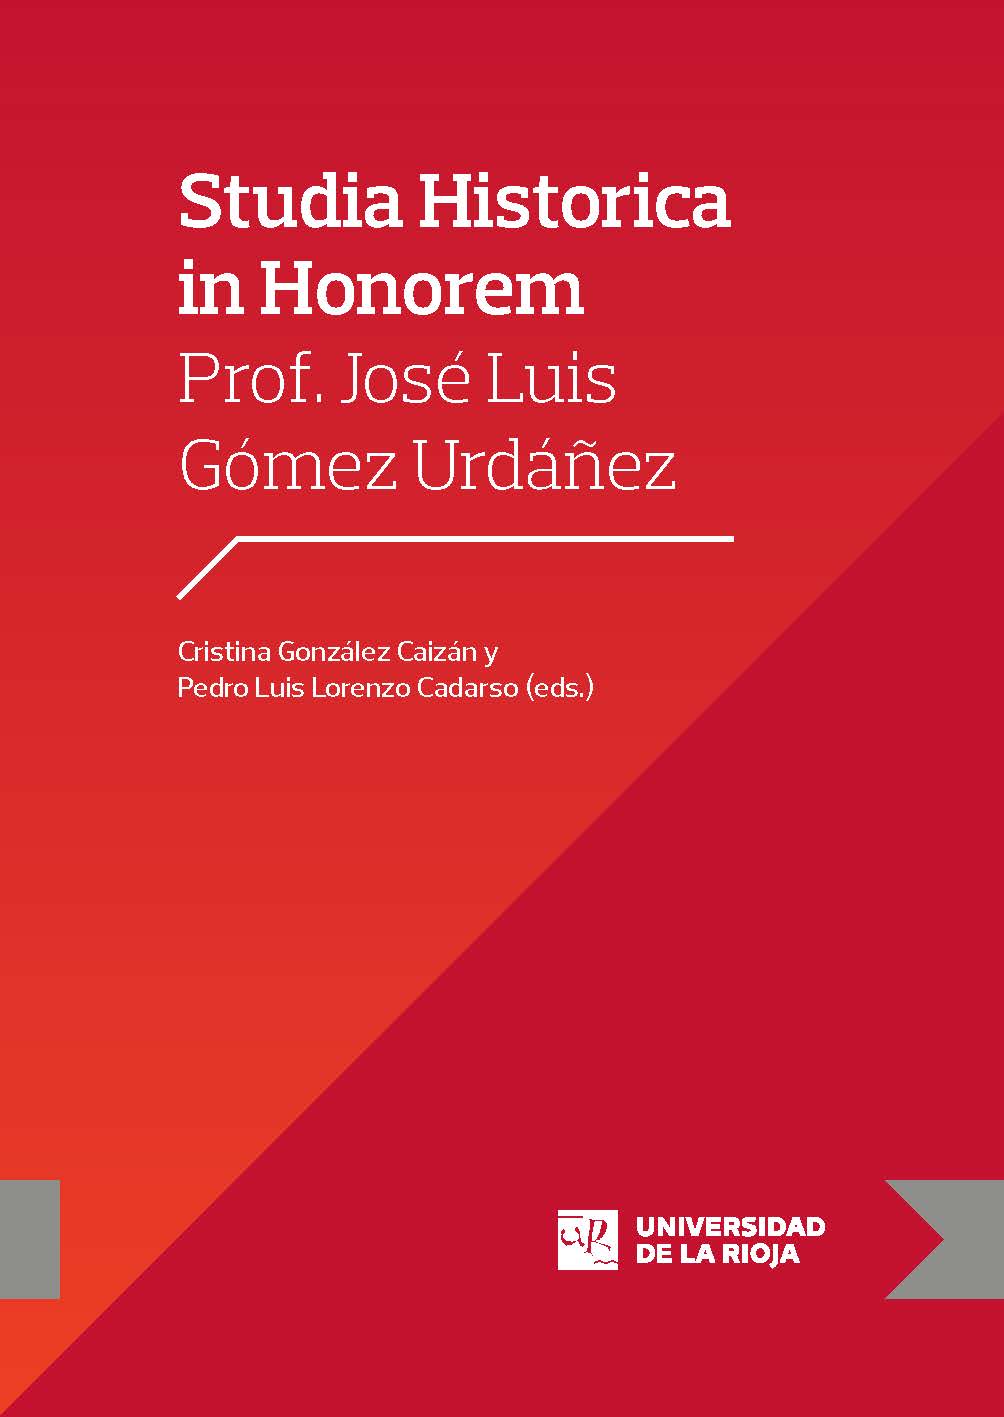 Imagen de portada del libro Studia Historica in Honorem Prof. José Luis Gómez Urdáñez